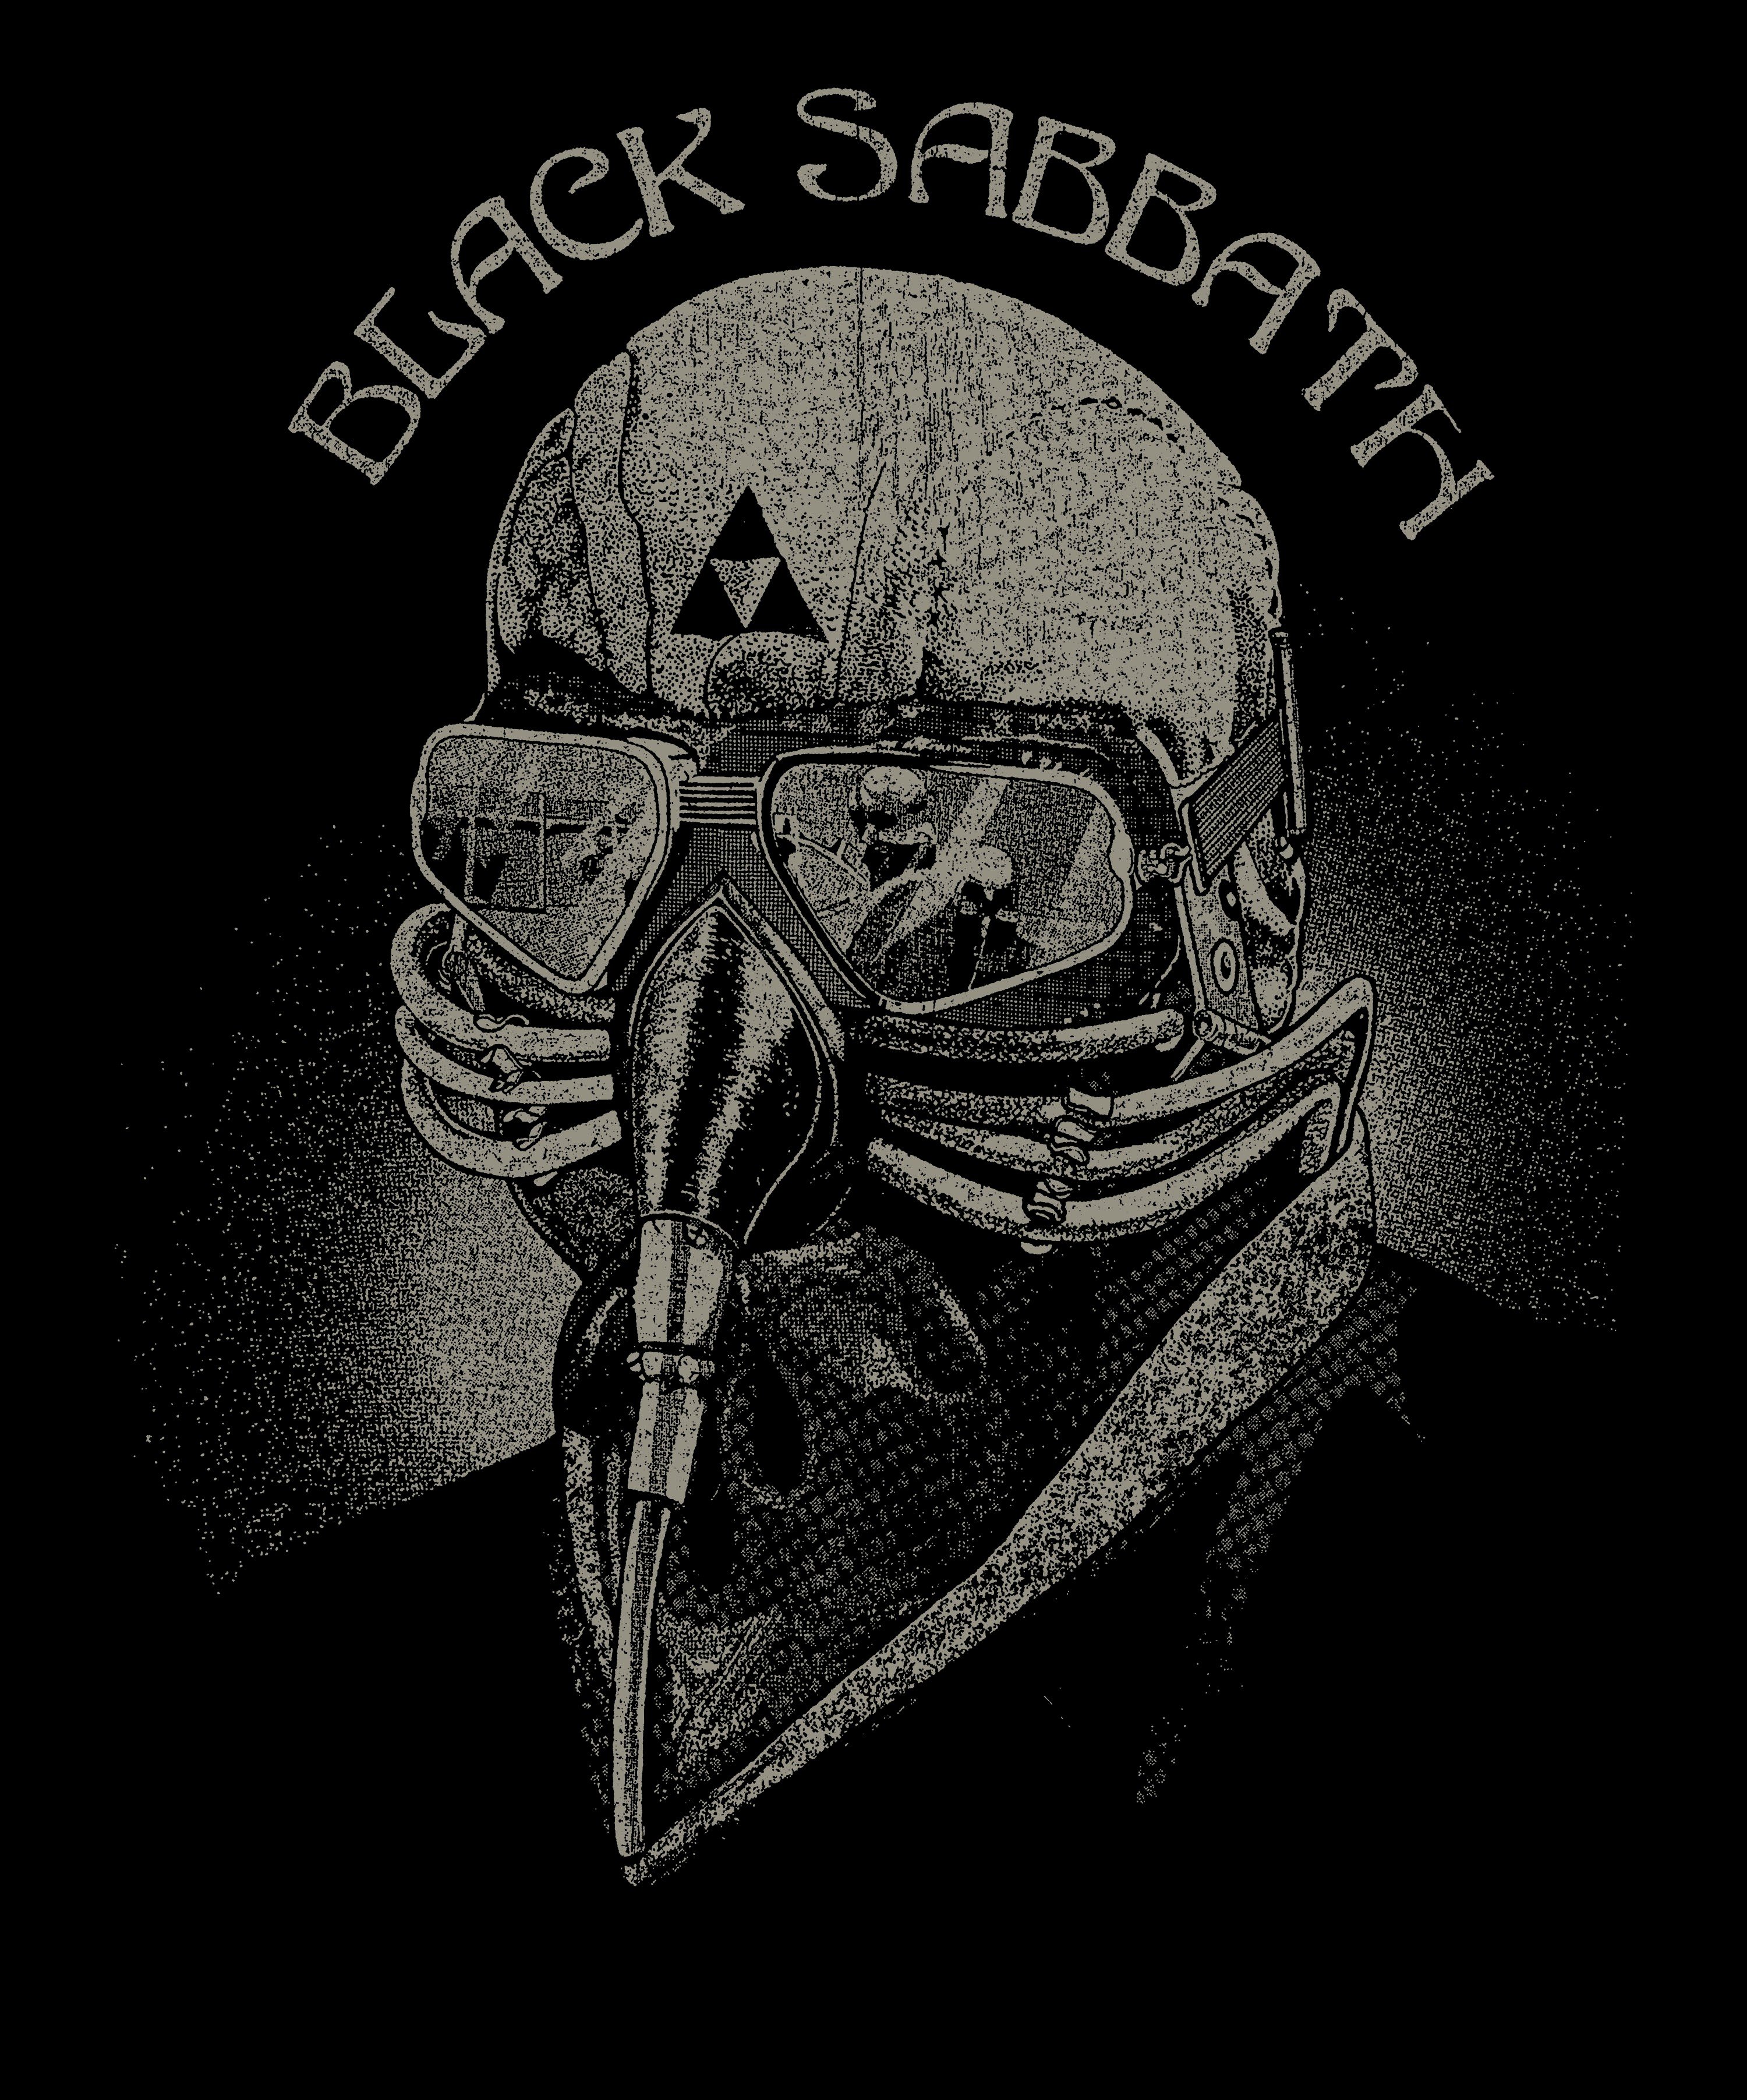 black sabbath logo black sabbath albums